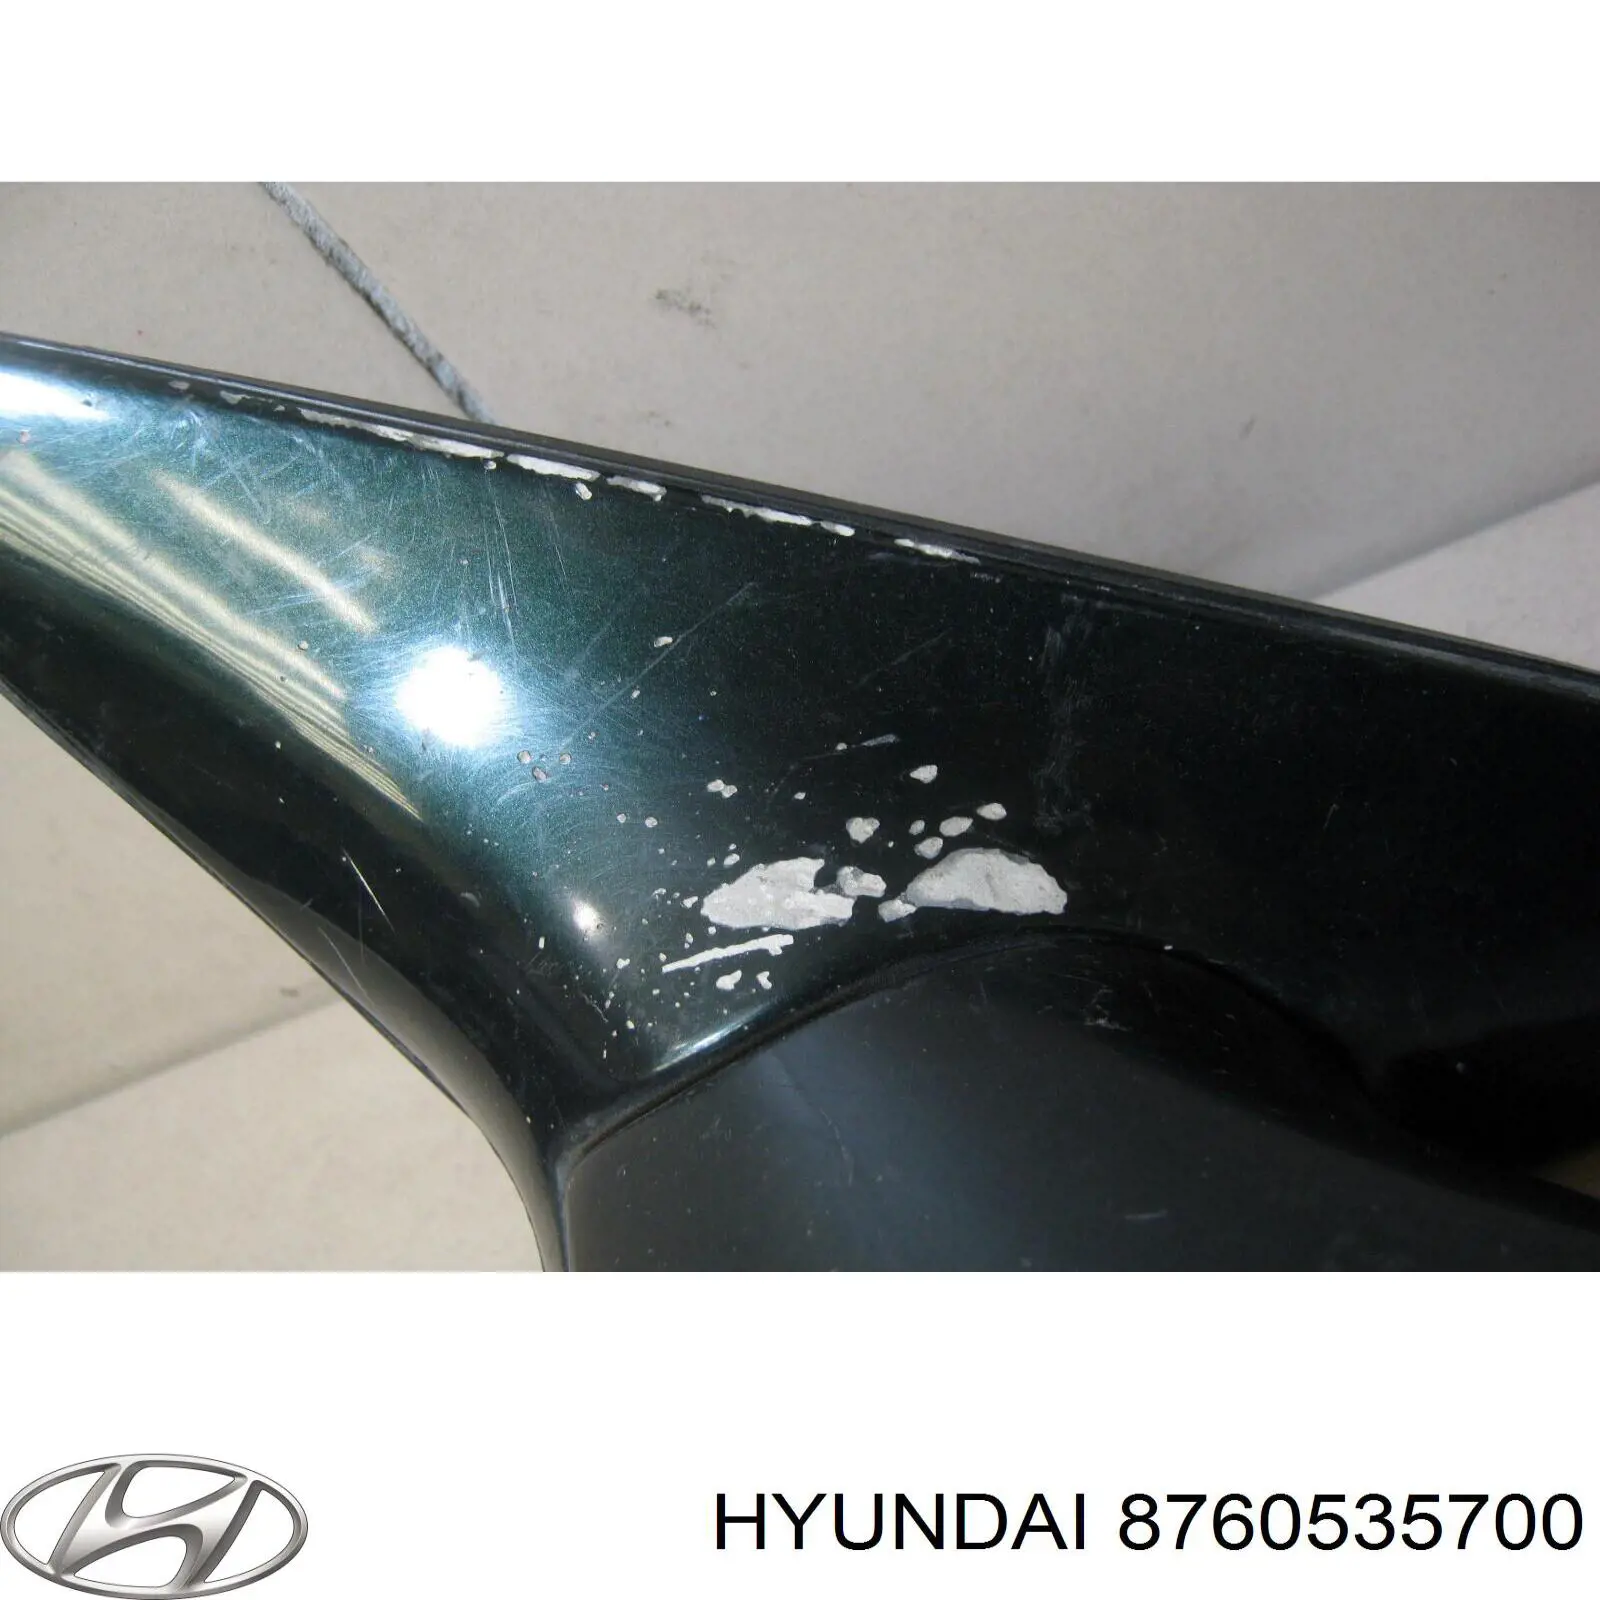 8760535700 Hyundai/Kia espejo retrovisor izquierdo